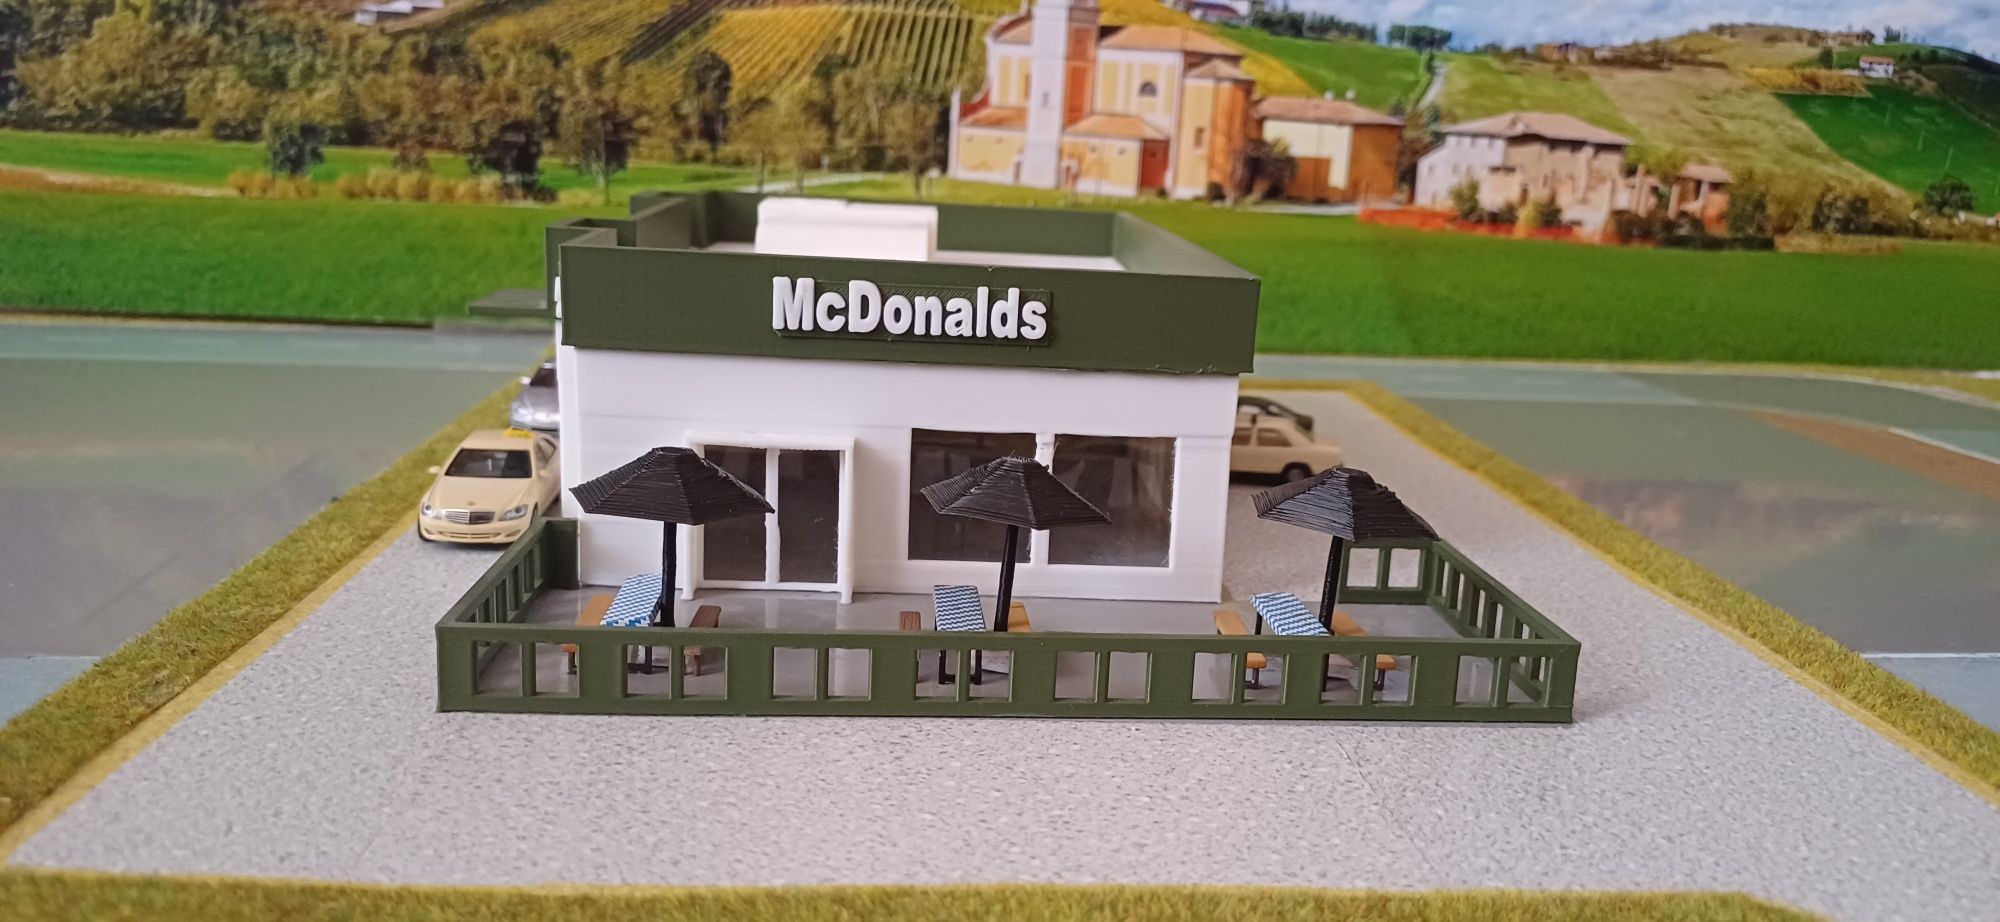 Macheta McDonalds scara 1.87